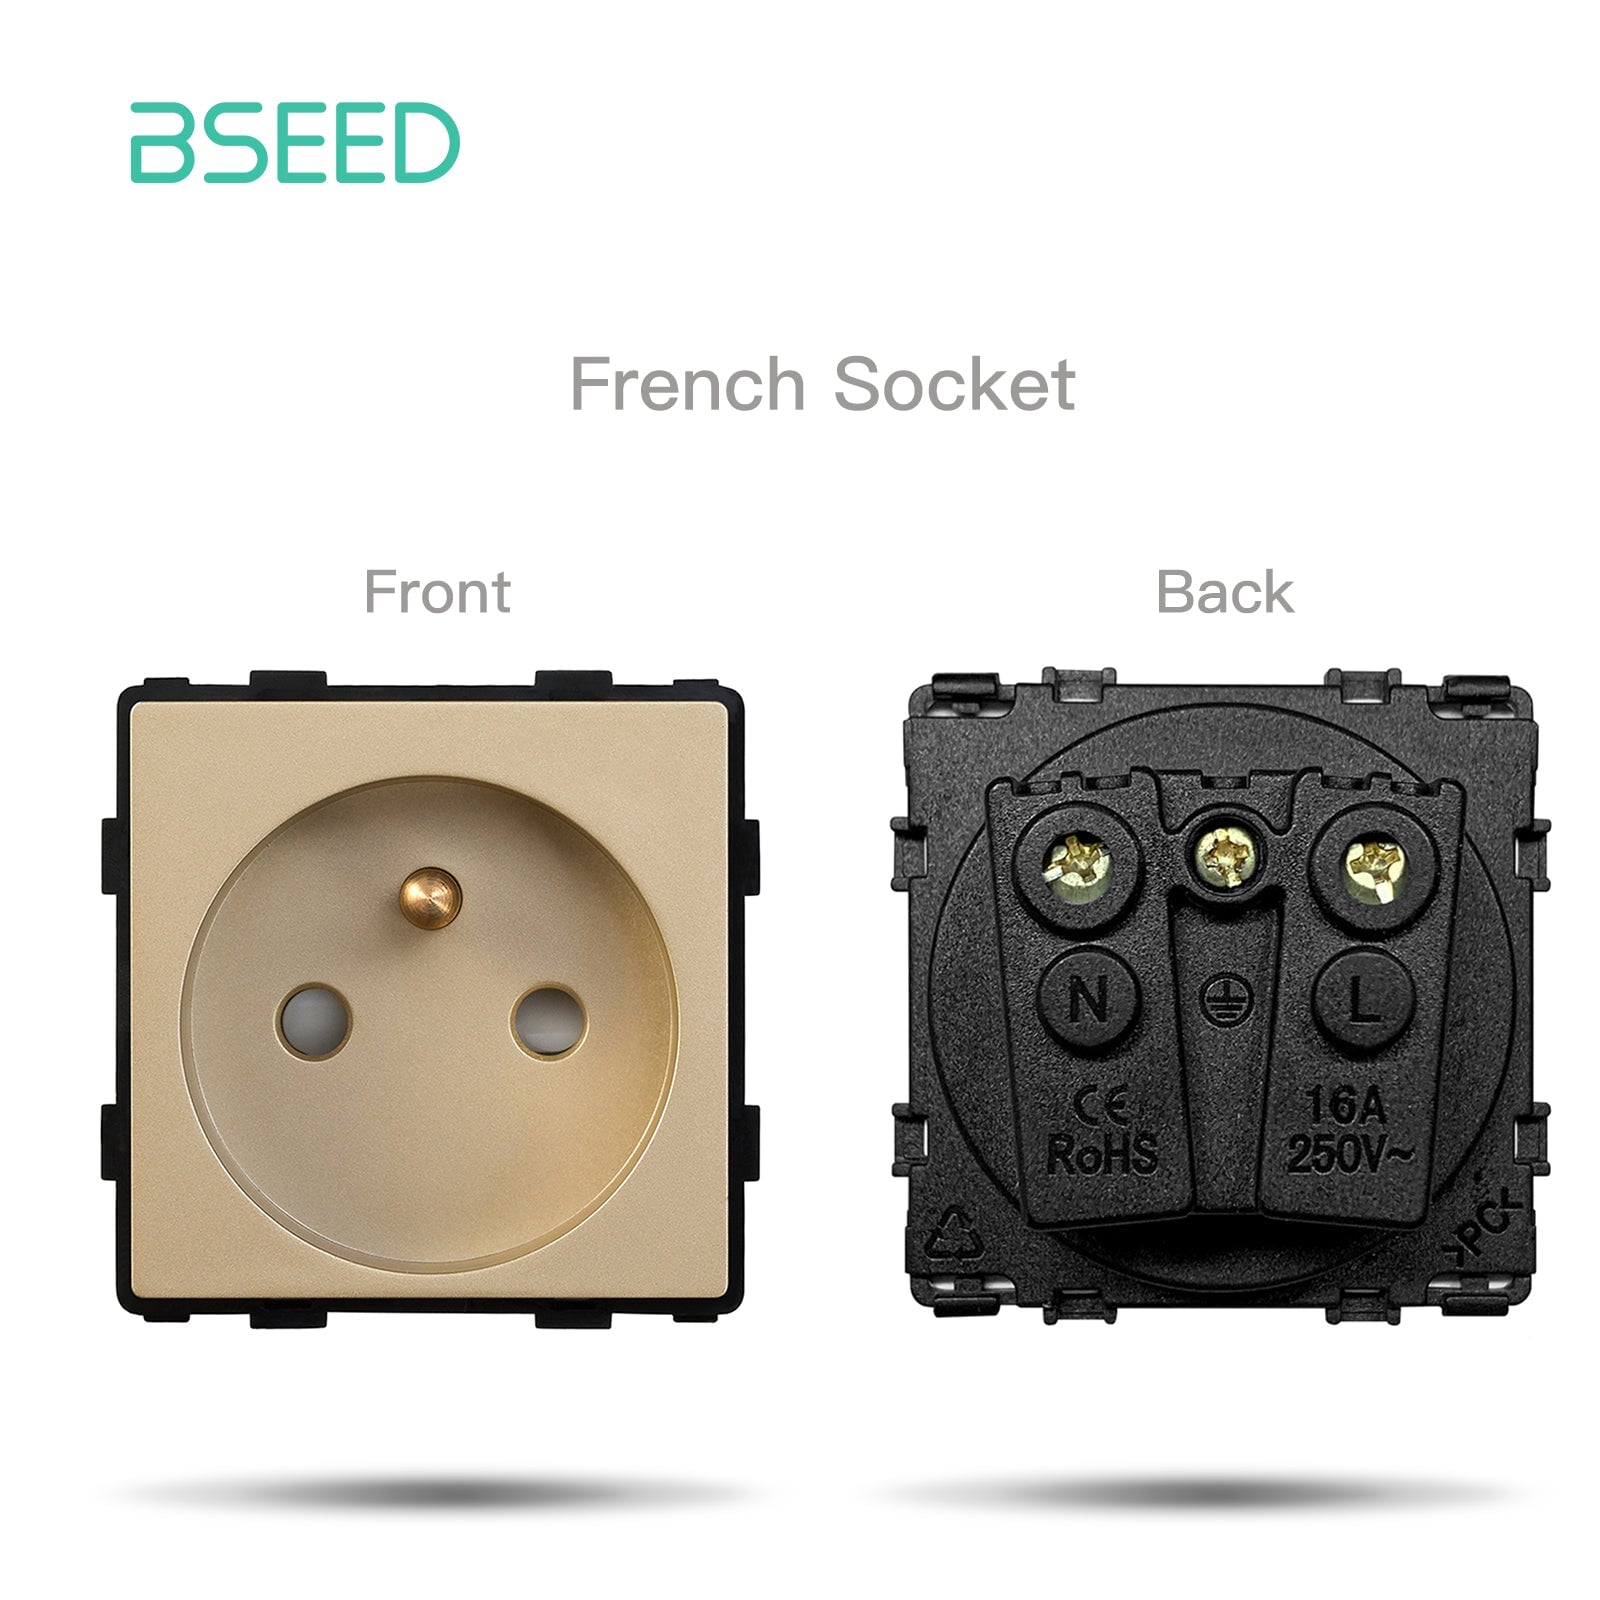 BSEED EU/FR/ UK/MF Standard Wall Socket Function Key Touch WiFi Zigbee type Power Outlets & Sockets Bseedswitch Gold FR Touch